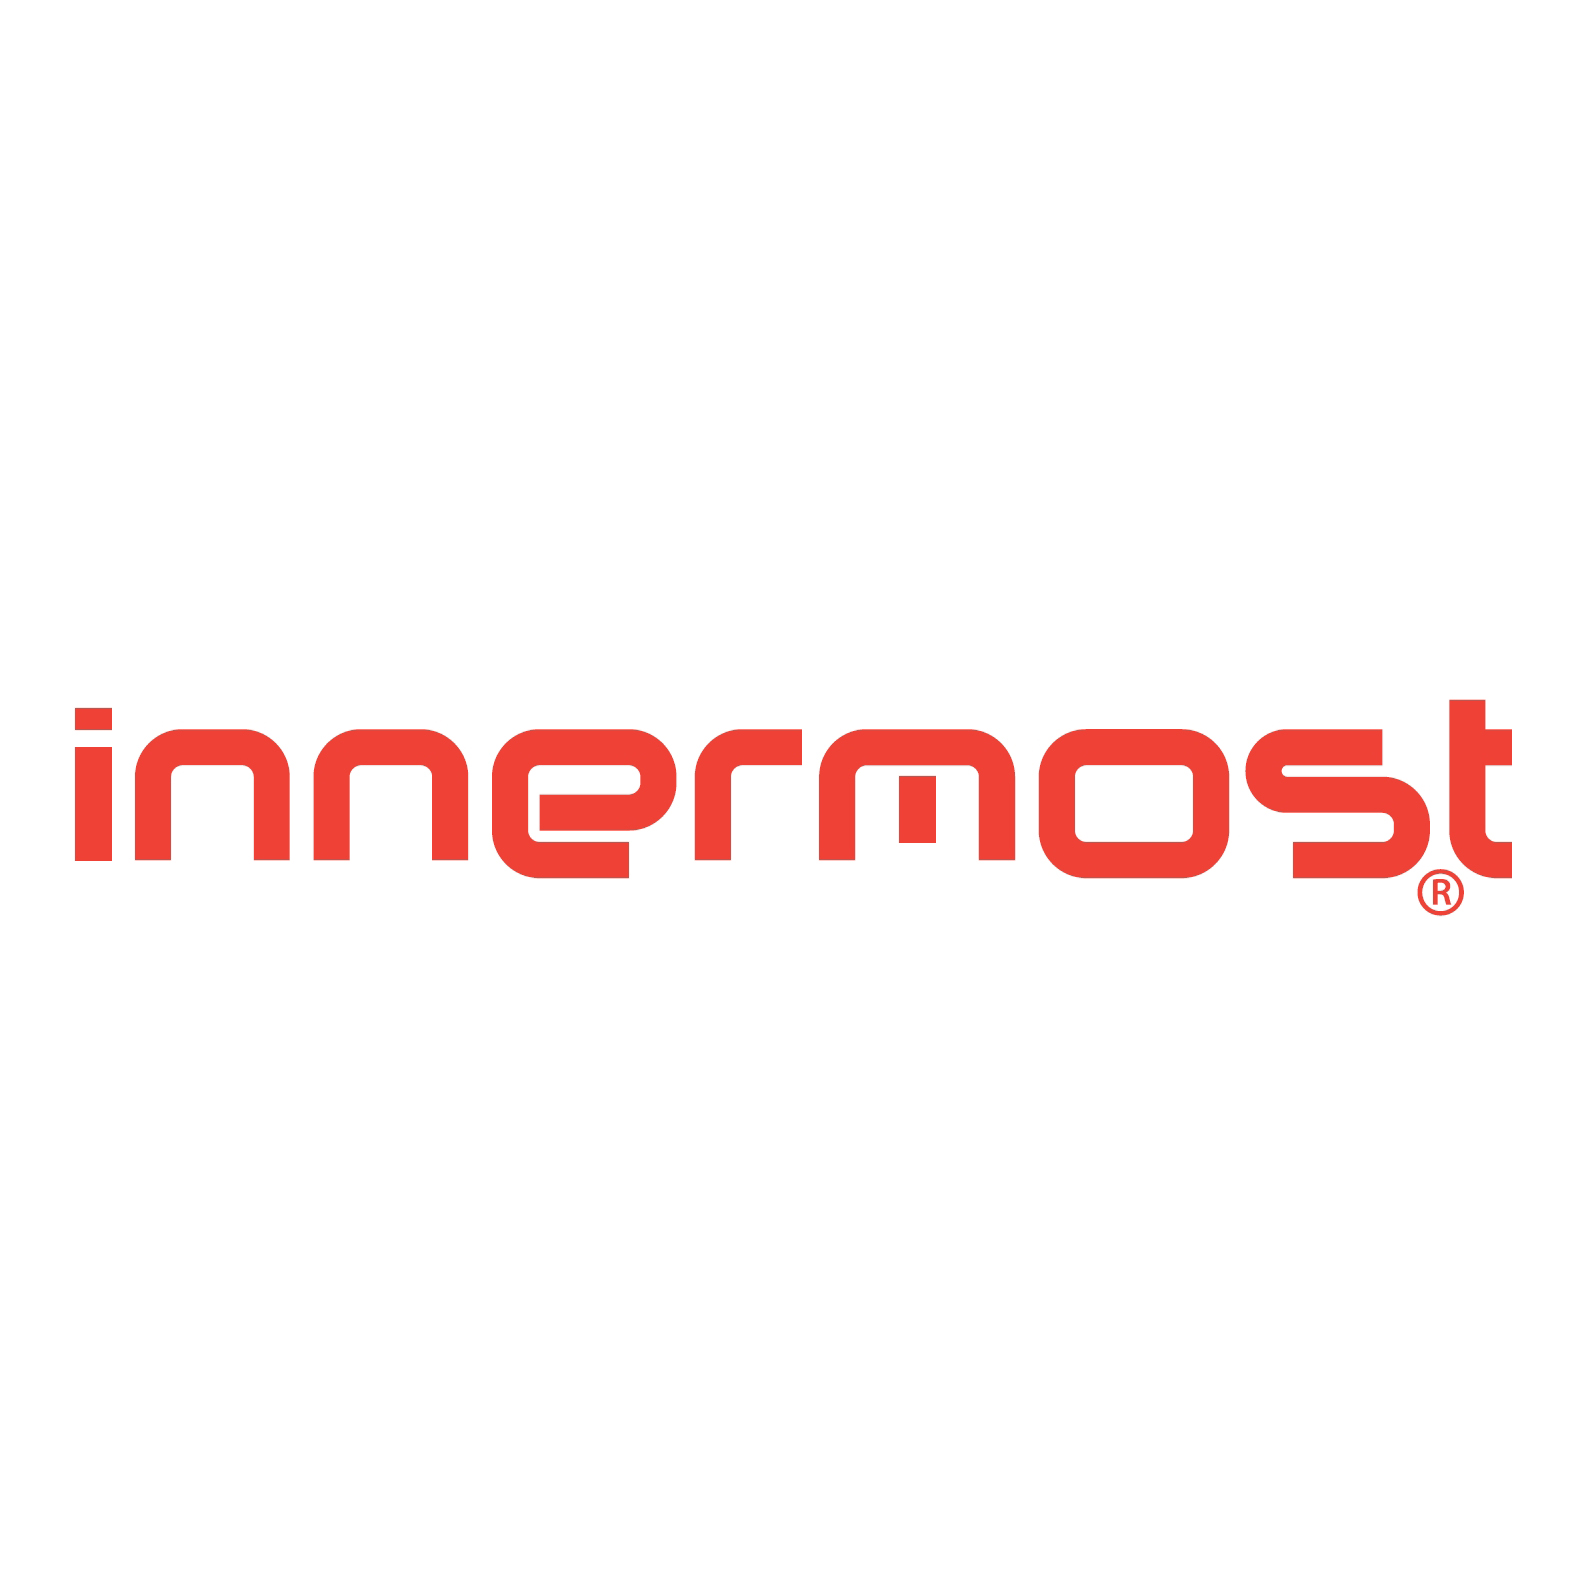 Innermost Logo.jpg